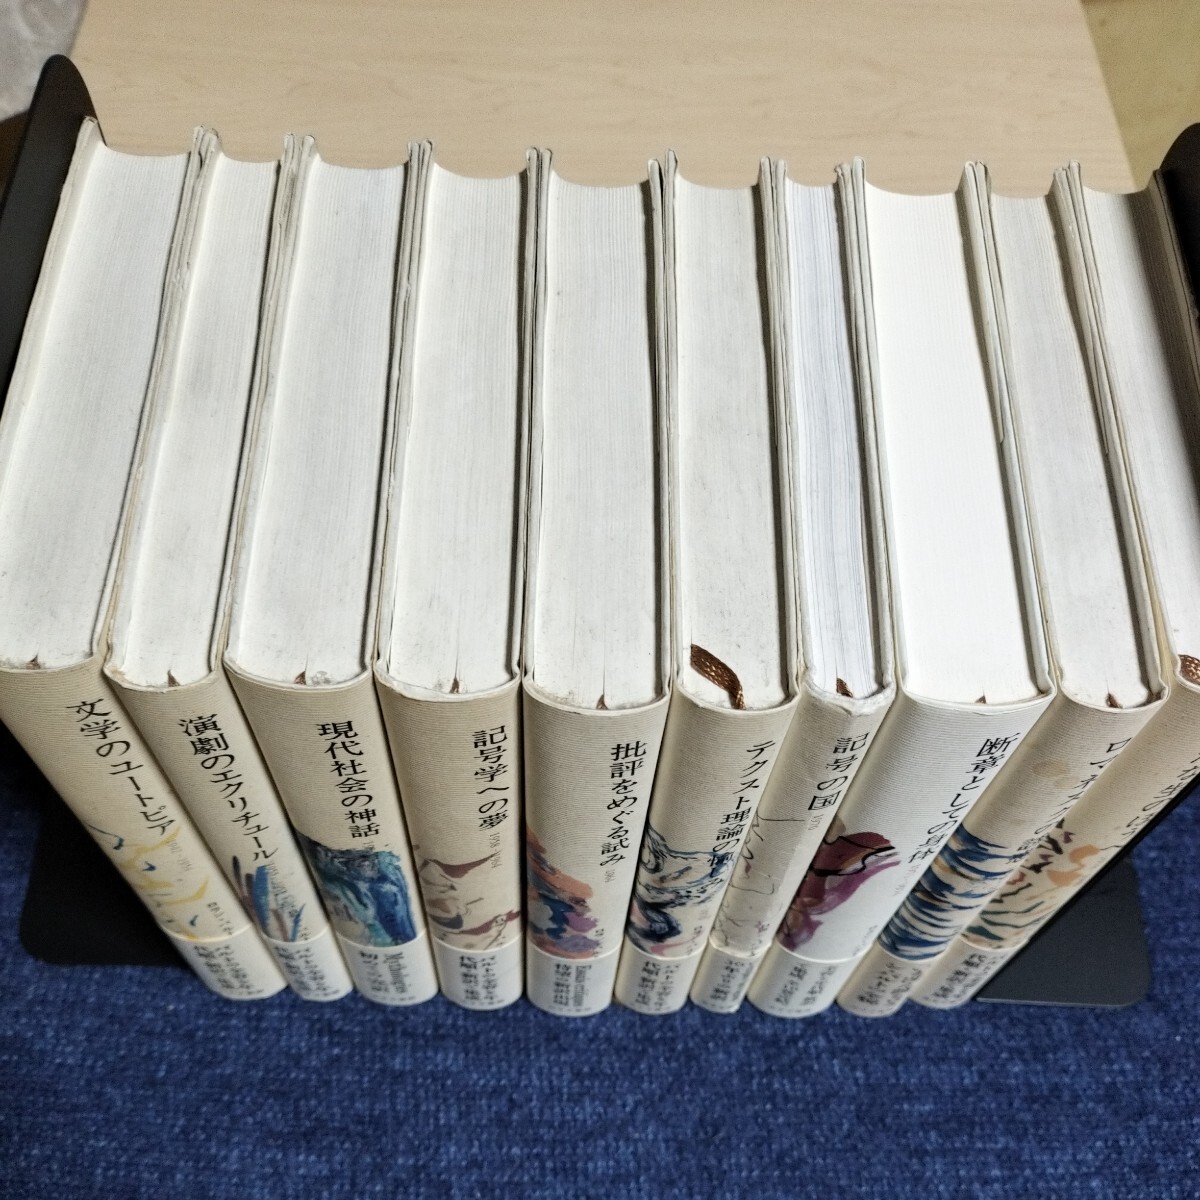 ロラン・バルト著作集 全10巻揃い みすず書房 2004年～の画像2